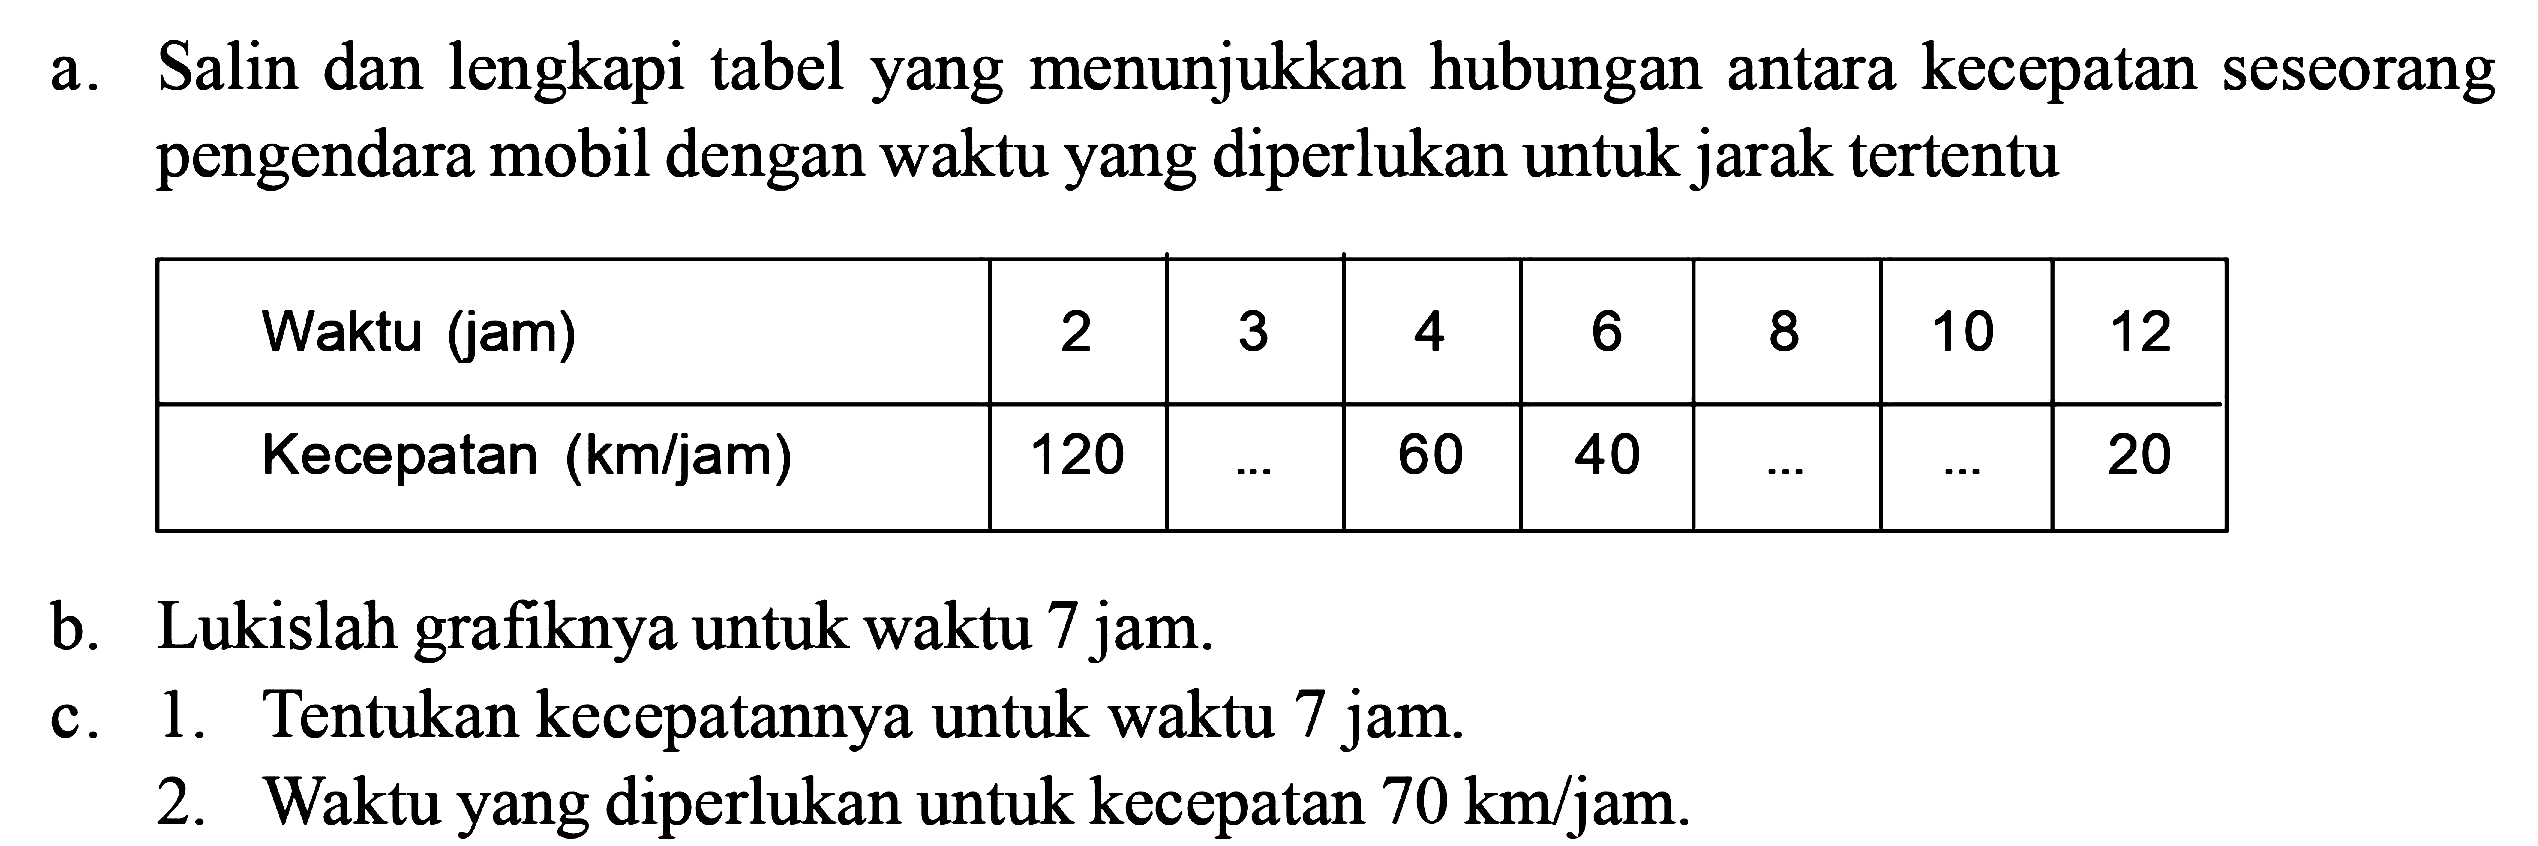 a. Salin dan lengkapi tabel yang menunjukkan hubungan antara kecepatan seseorang pengendara mobil dengan waktu yang diperlukan untuk jarak tertentuWaktu (jam) 2 3 4 6 8 10 12 Kecepatan (km/jam) 120 ... 60 40 ... ... 20 b. Lukislah grafiknya untuk waktu 7 jam.c. 1. Tentukan kecepatannya untuk waktu 7 jam. 2. Waktu yang diperlukan untuk kecepatan 70 km/jam.